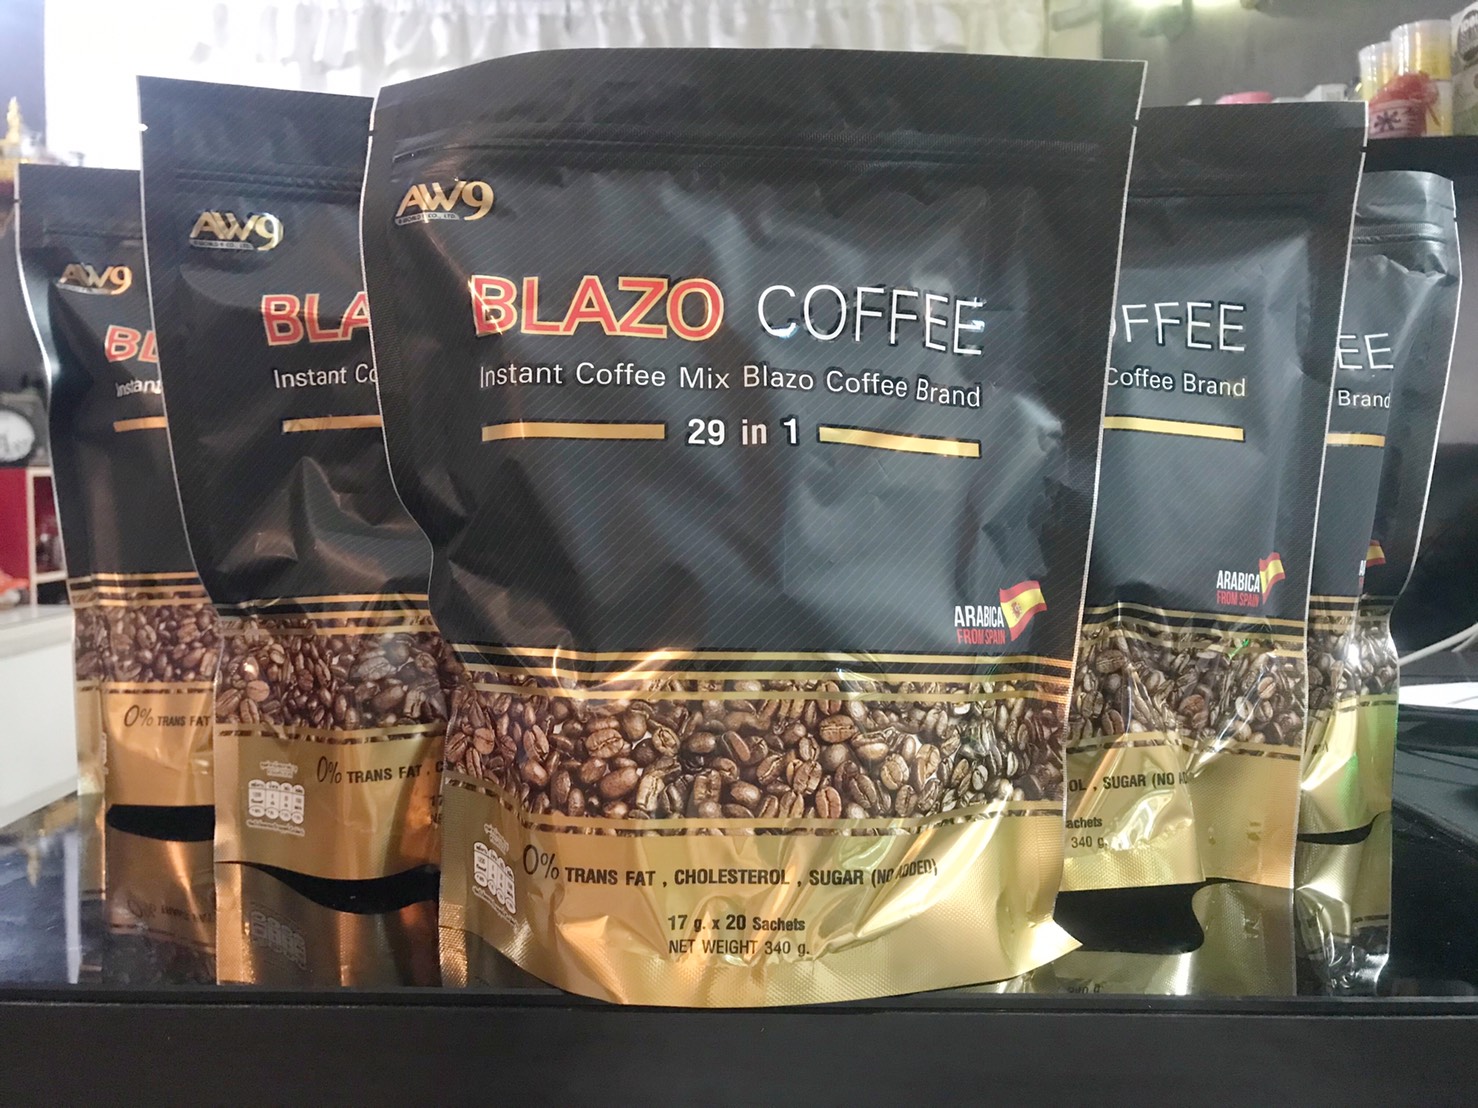 5 ห่อ  กาแฟเพื่อสุขภาพ Blazo Coffee 29 in 1 (1 ห่อ 20 ซอง 17 กรัม)